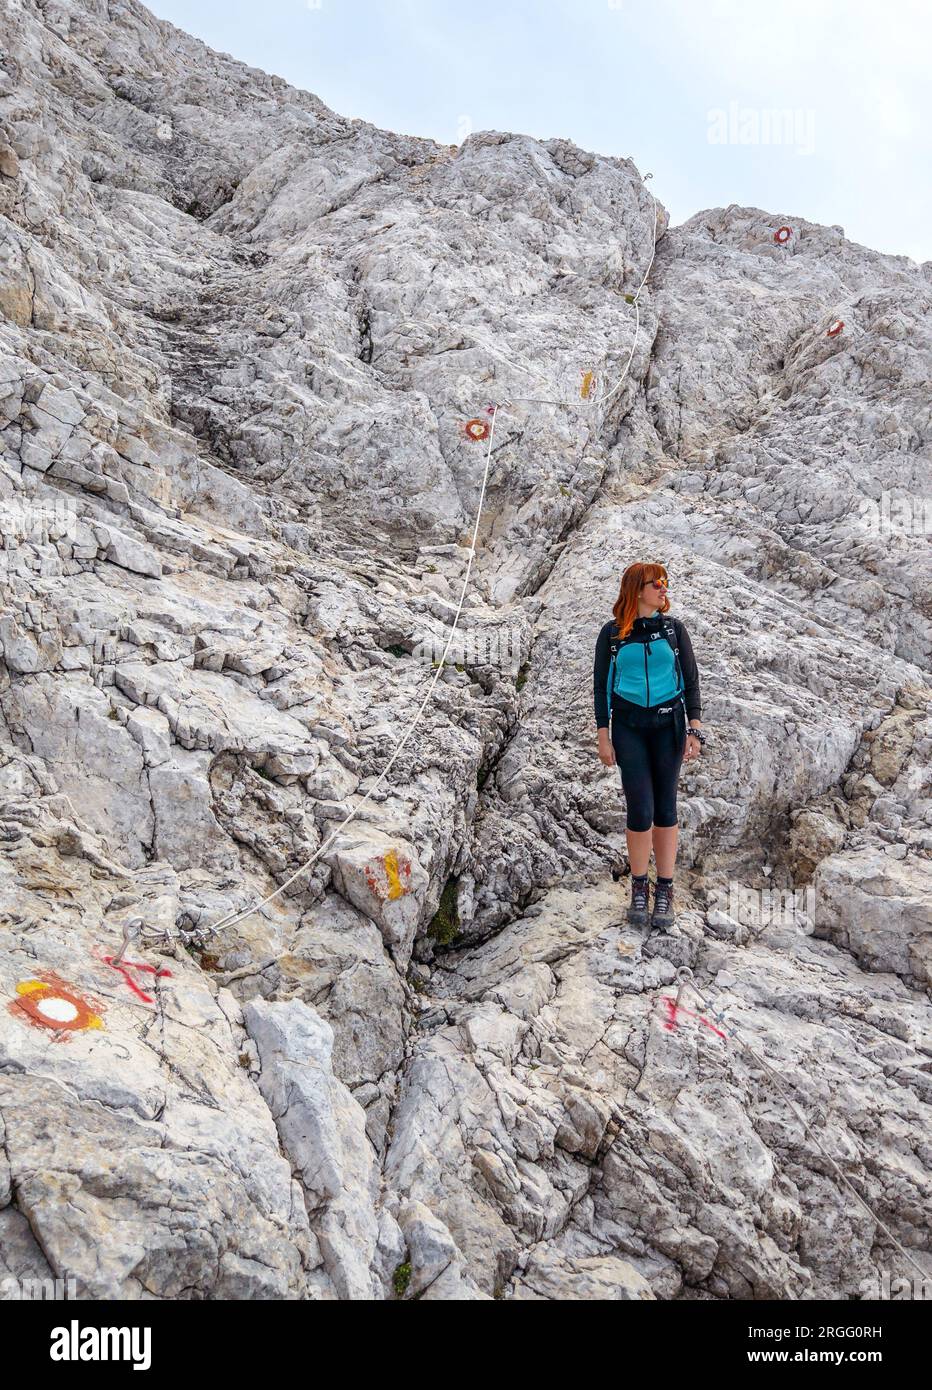 Gran Sasso, Italia - la via alpinistica per la vetta Occidentale del Corno grande, a 2912 metri in Abruzzo, chiamata via delle Creste o Cresta Ovest. Foto Stock